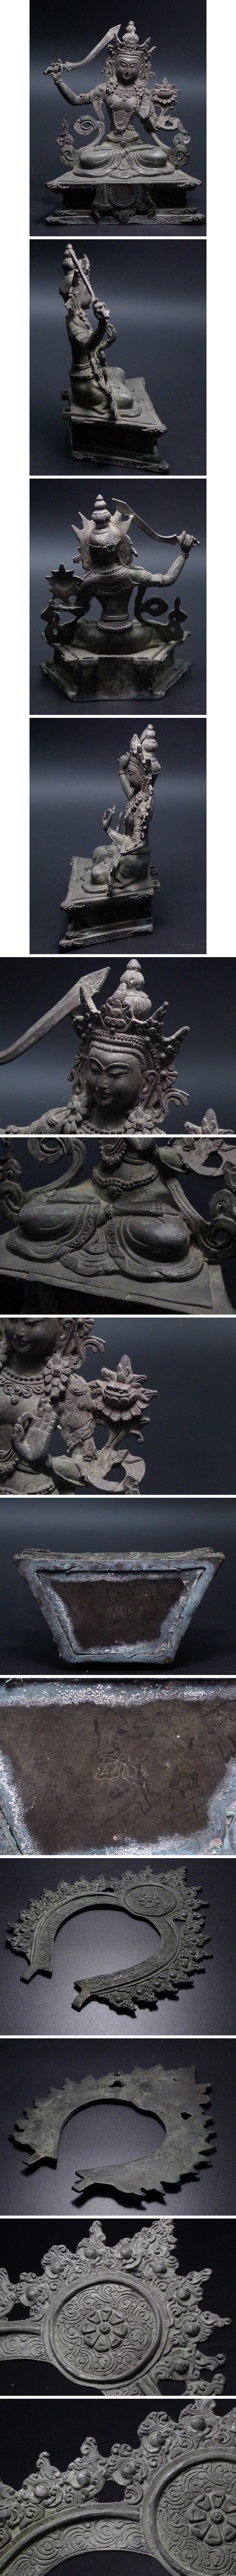 大幅割引▲60Z1223▲古銅製細密金工チベット密教美術・文殊師利菩薩・重量約885g 仏像